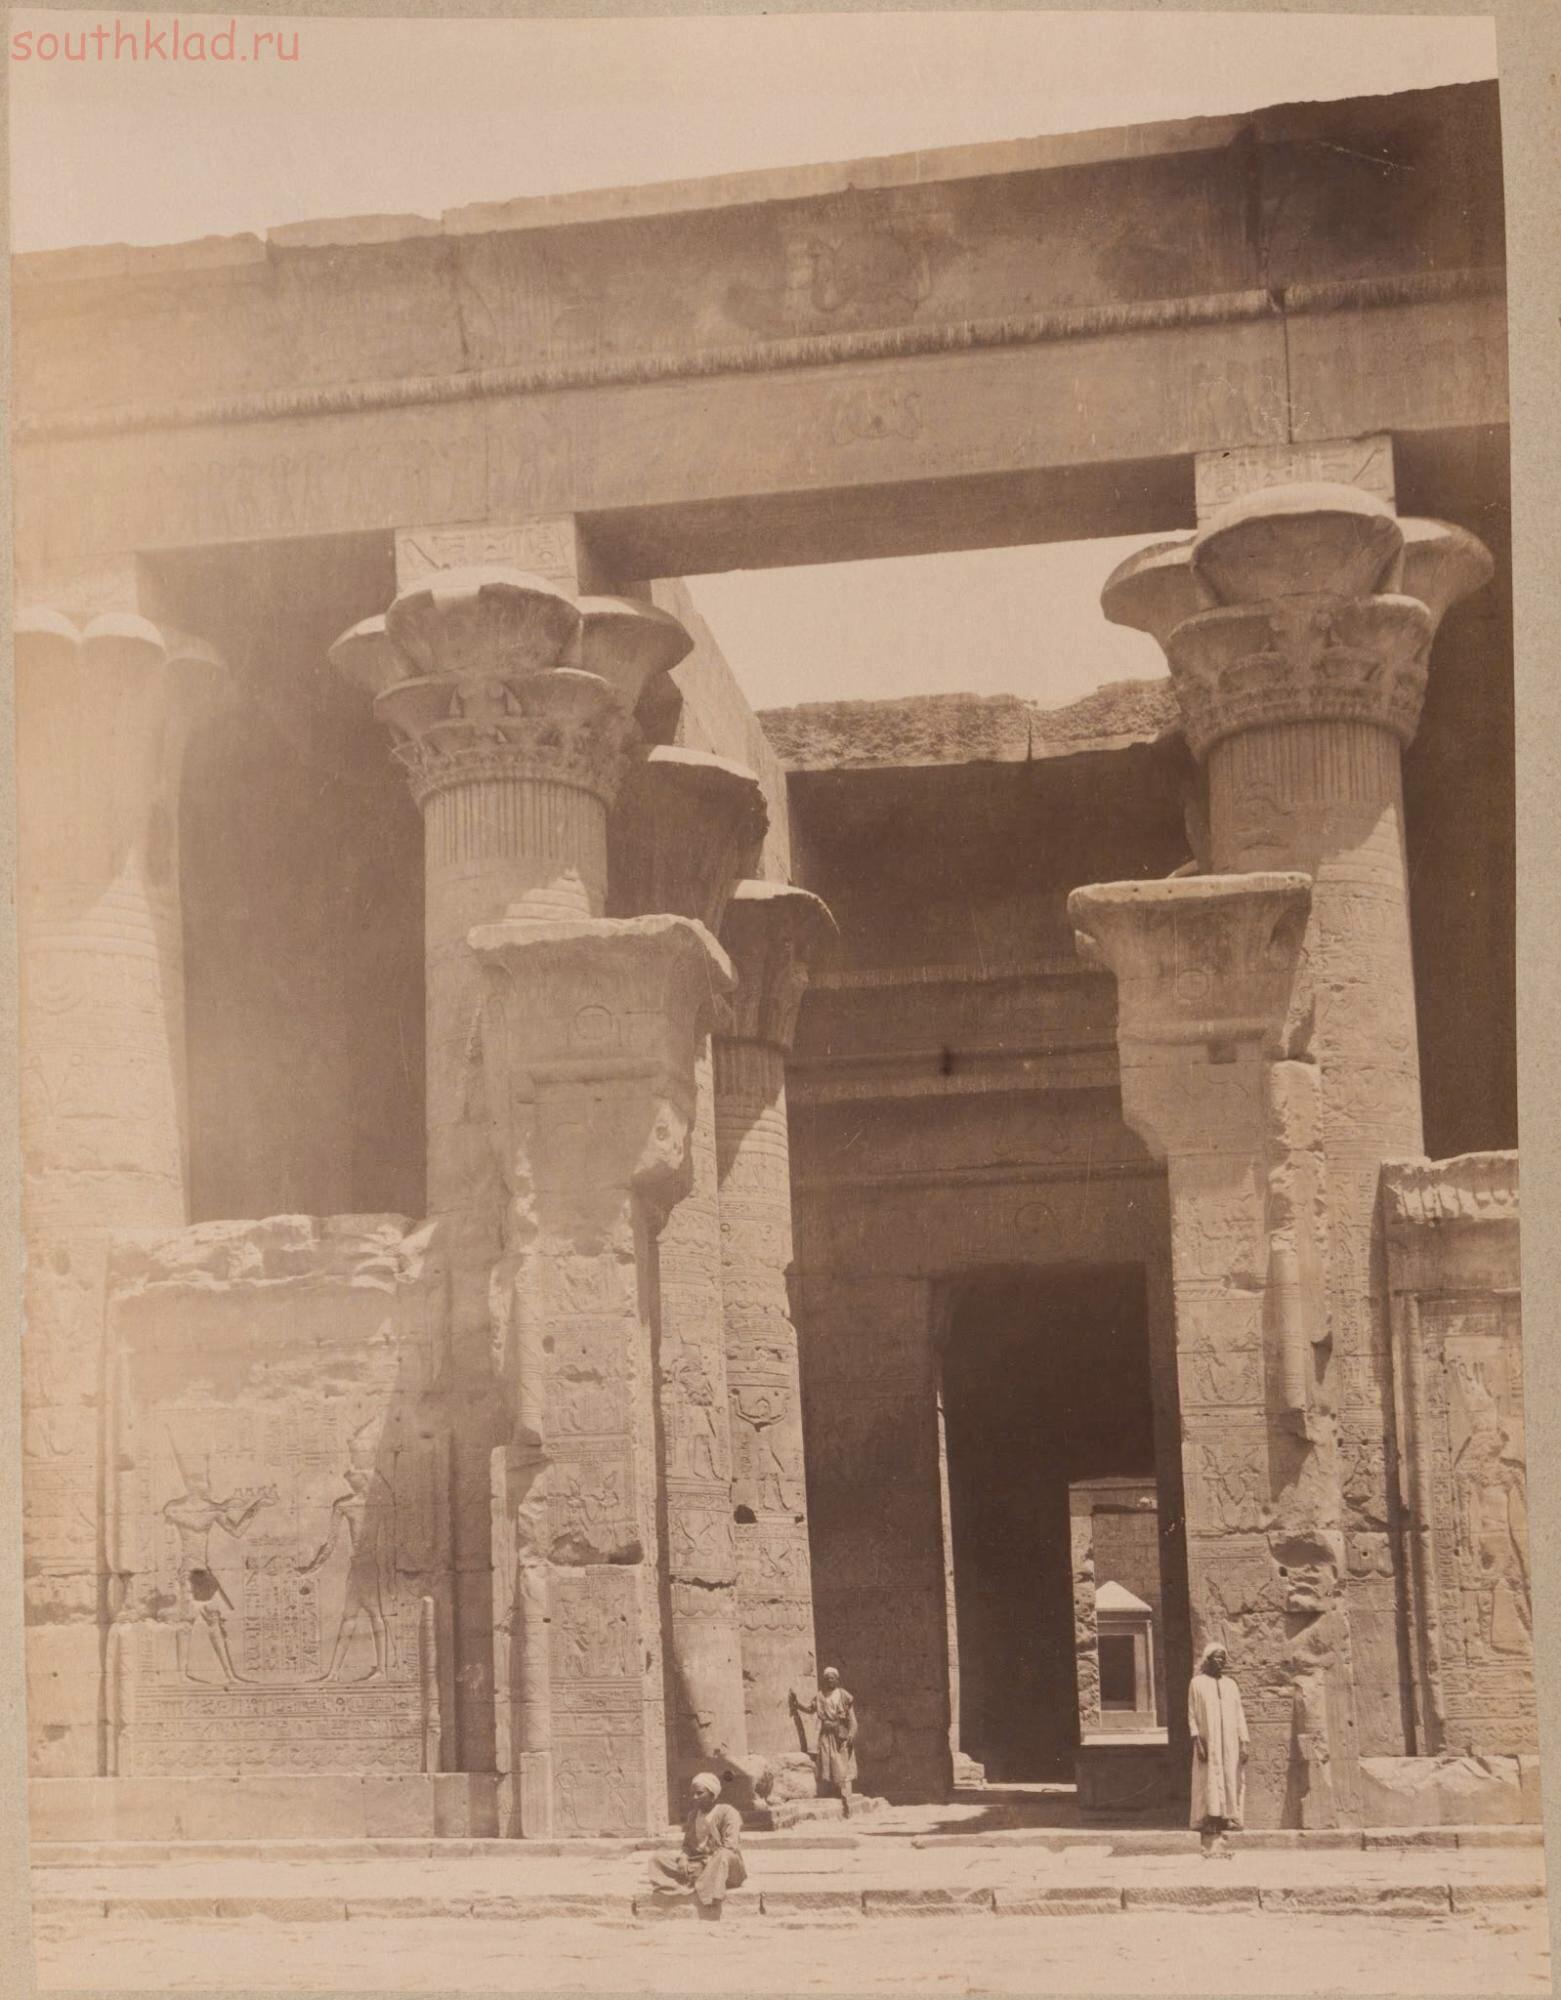 Снимки Египта 1895 года - 0_10a387_5f39413a_orig.jpg